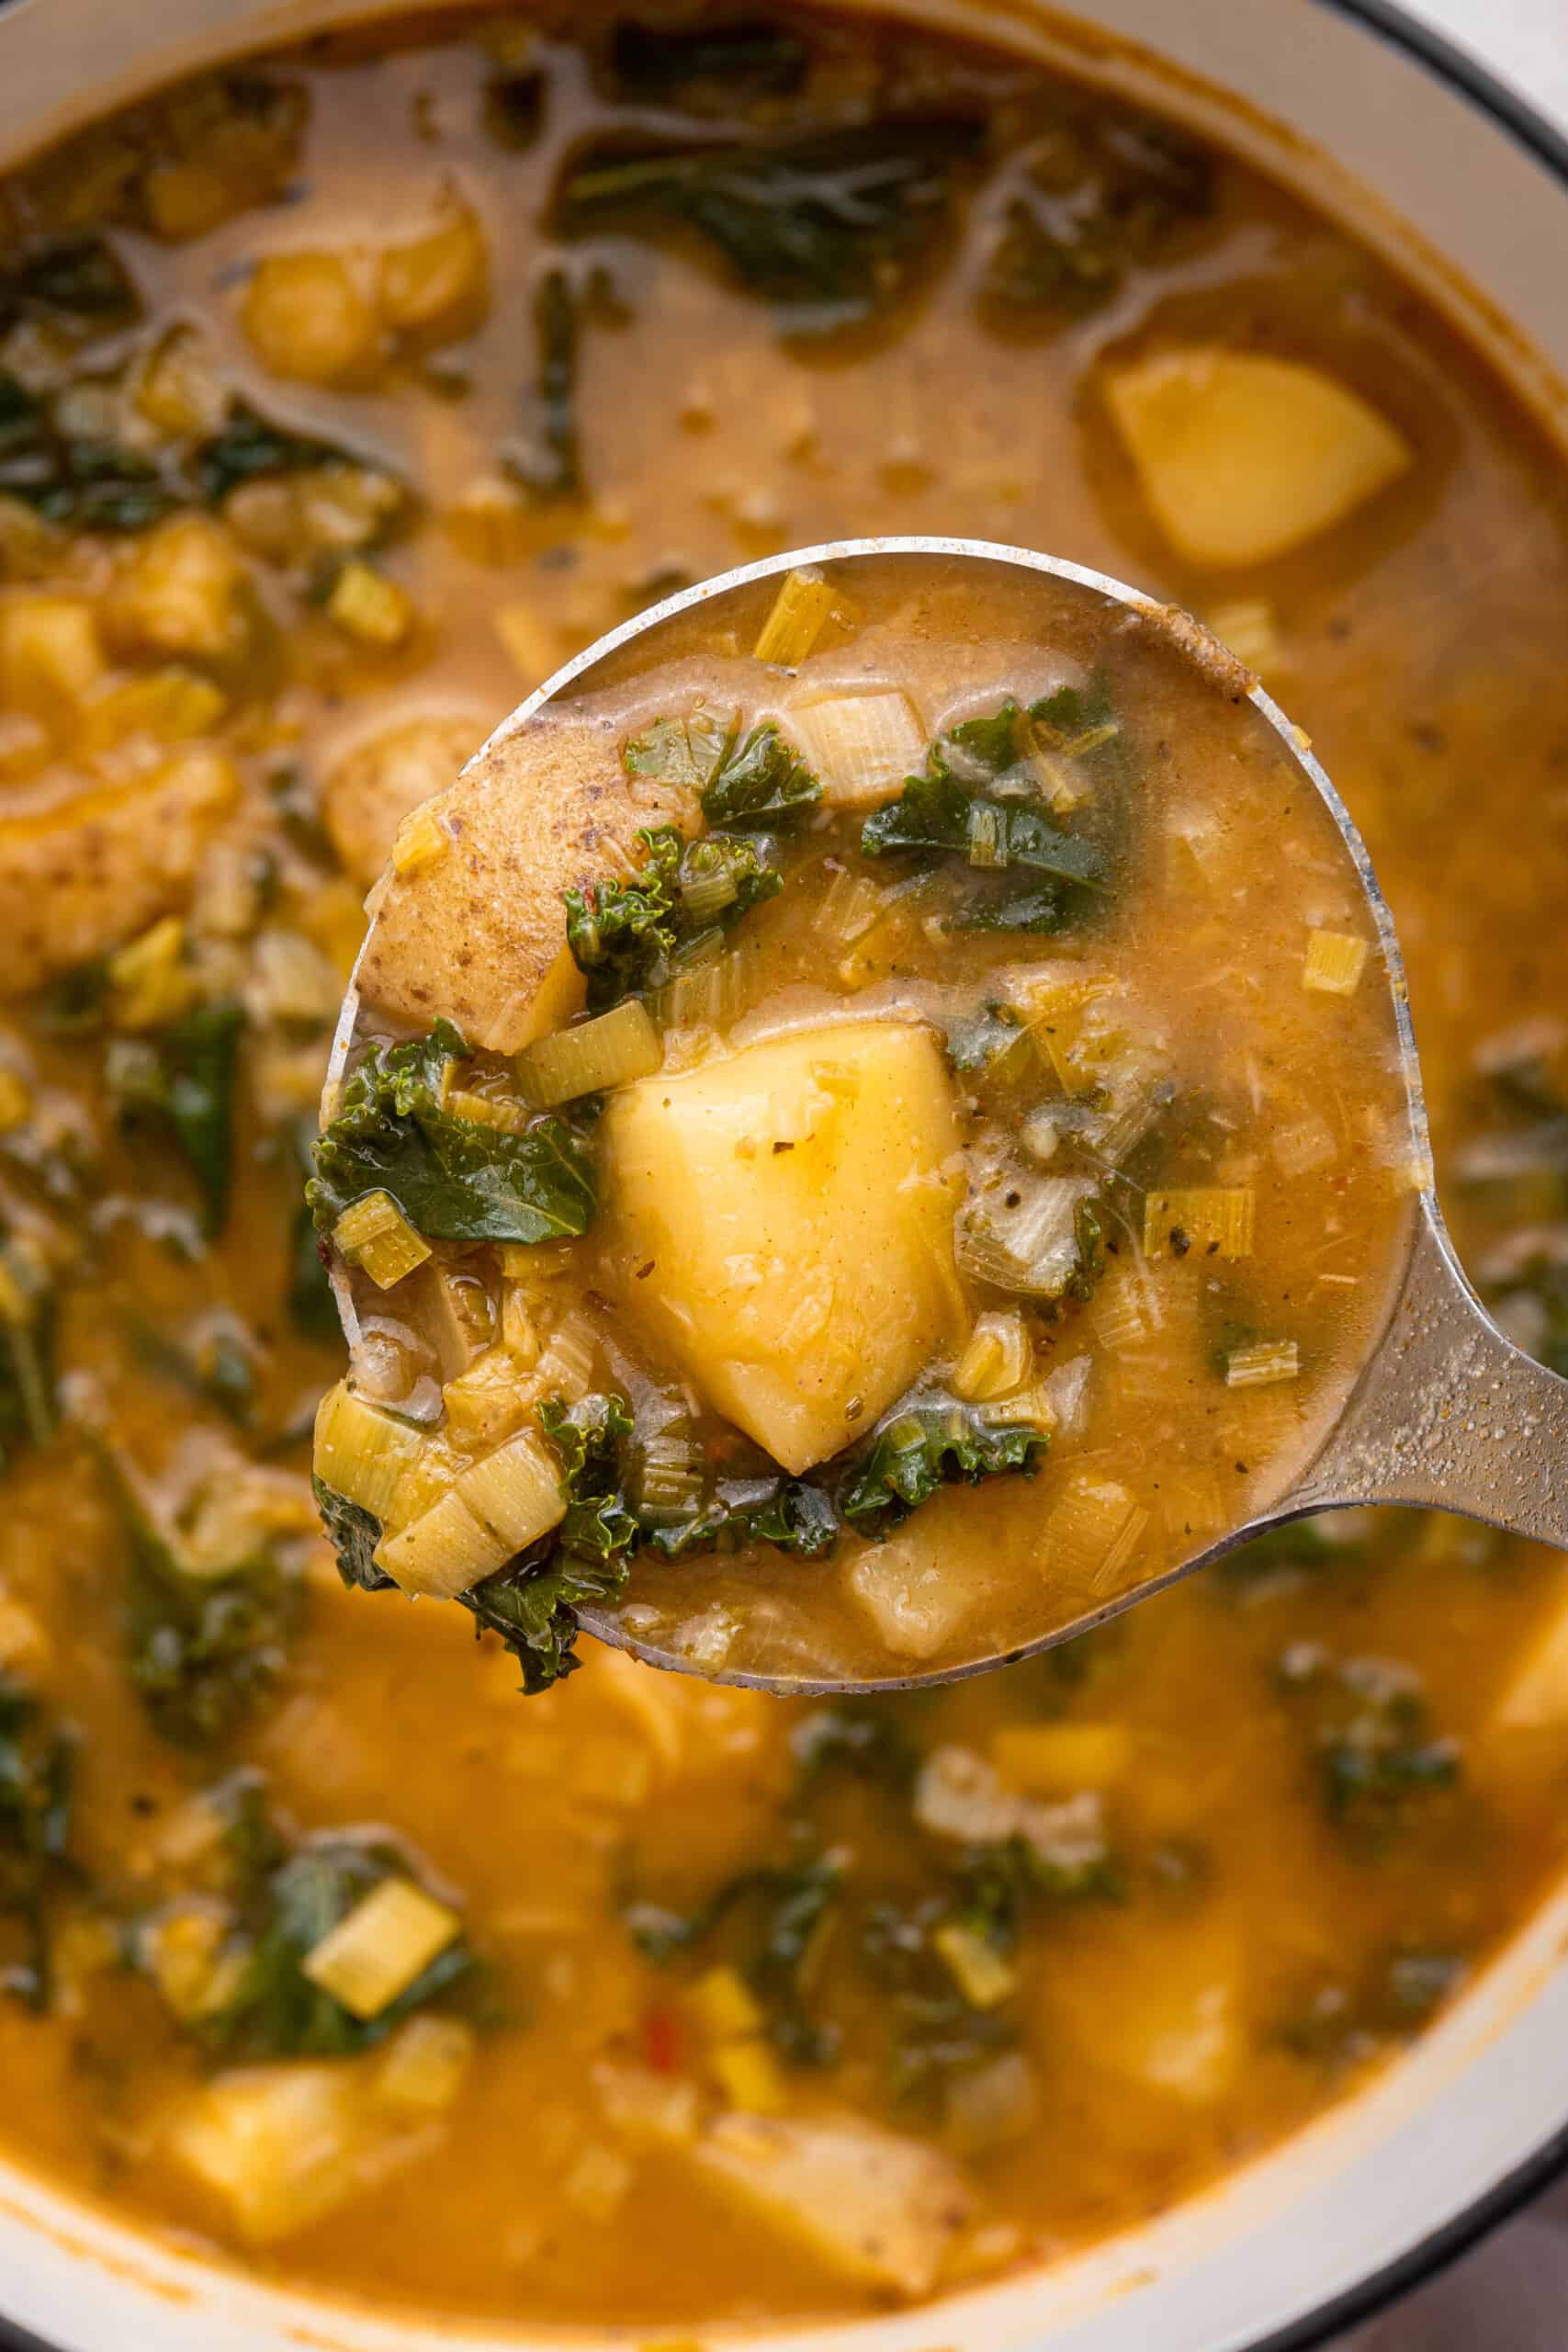 Ladle full of vegan potato soup